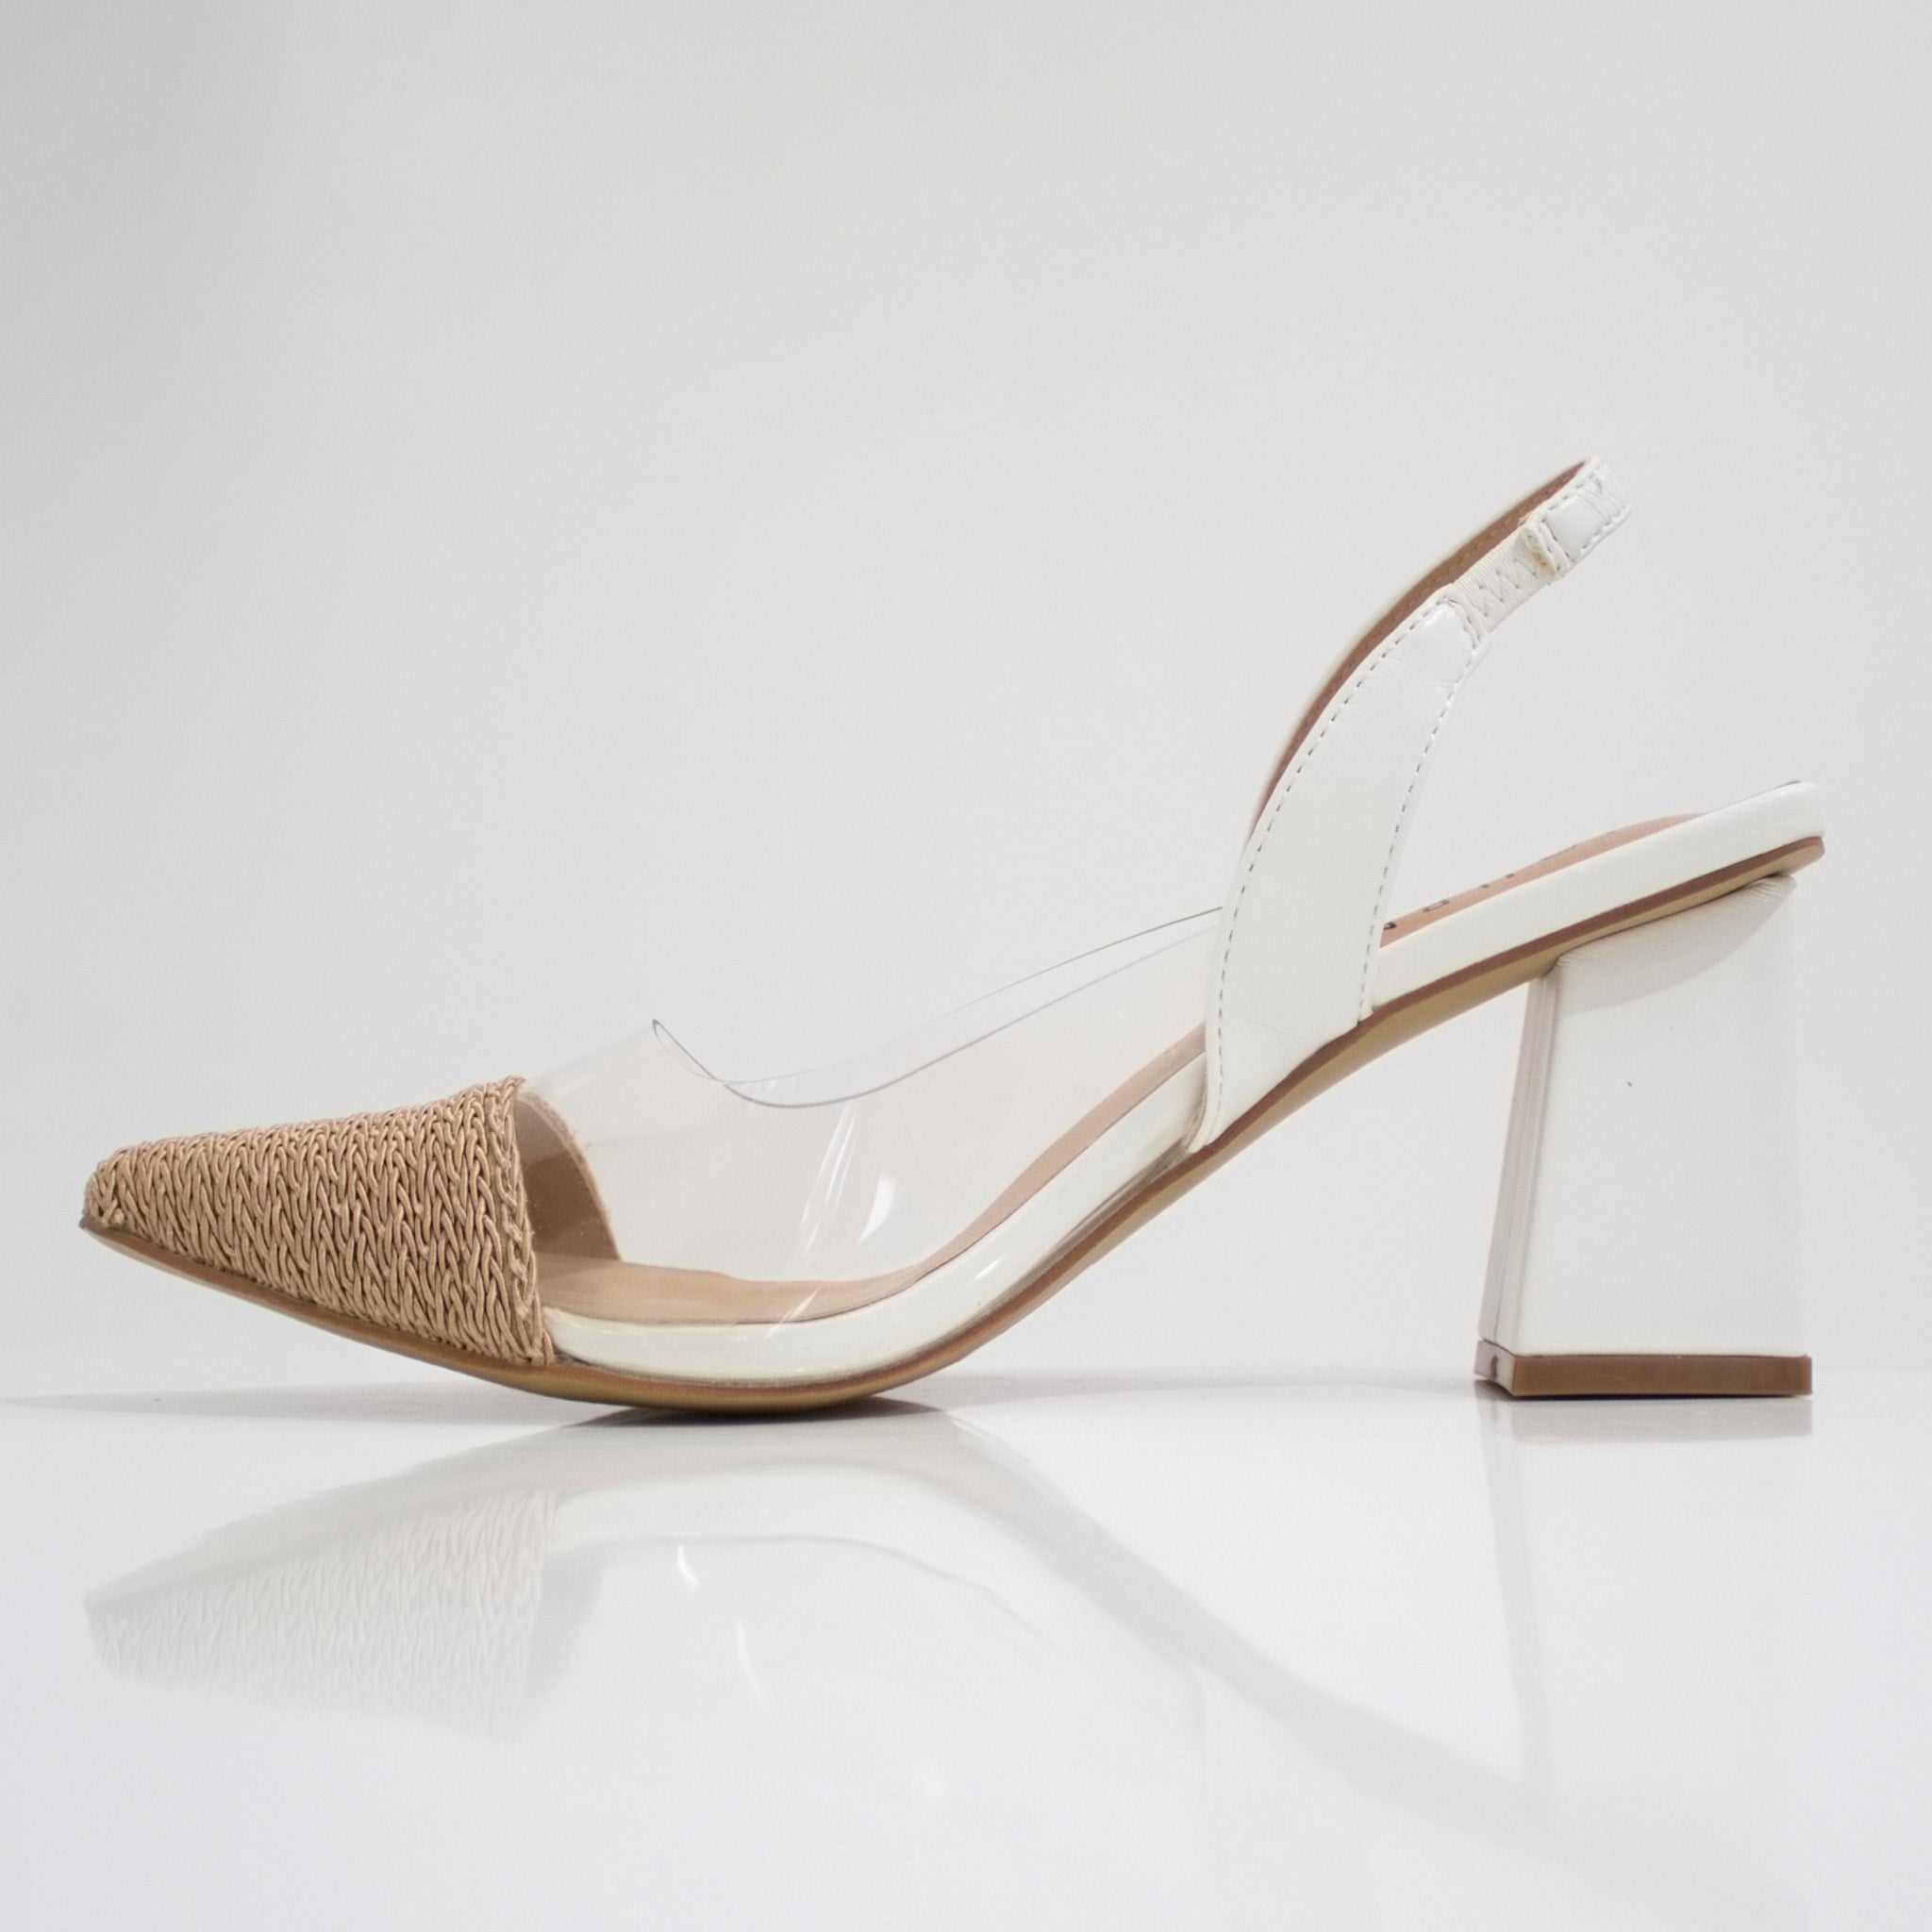 White 7cm heel vinyl sling back shoe journee